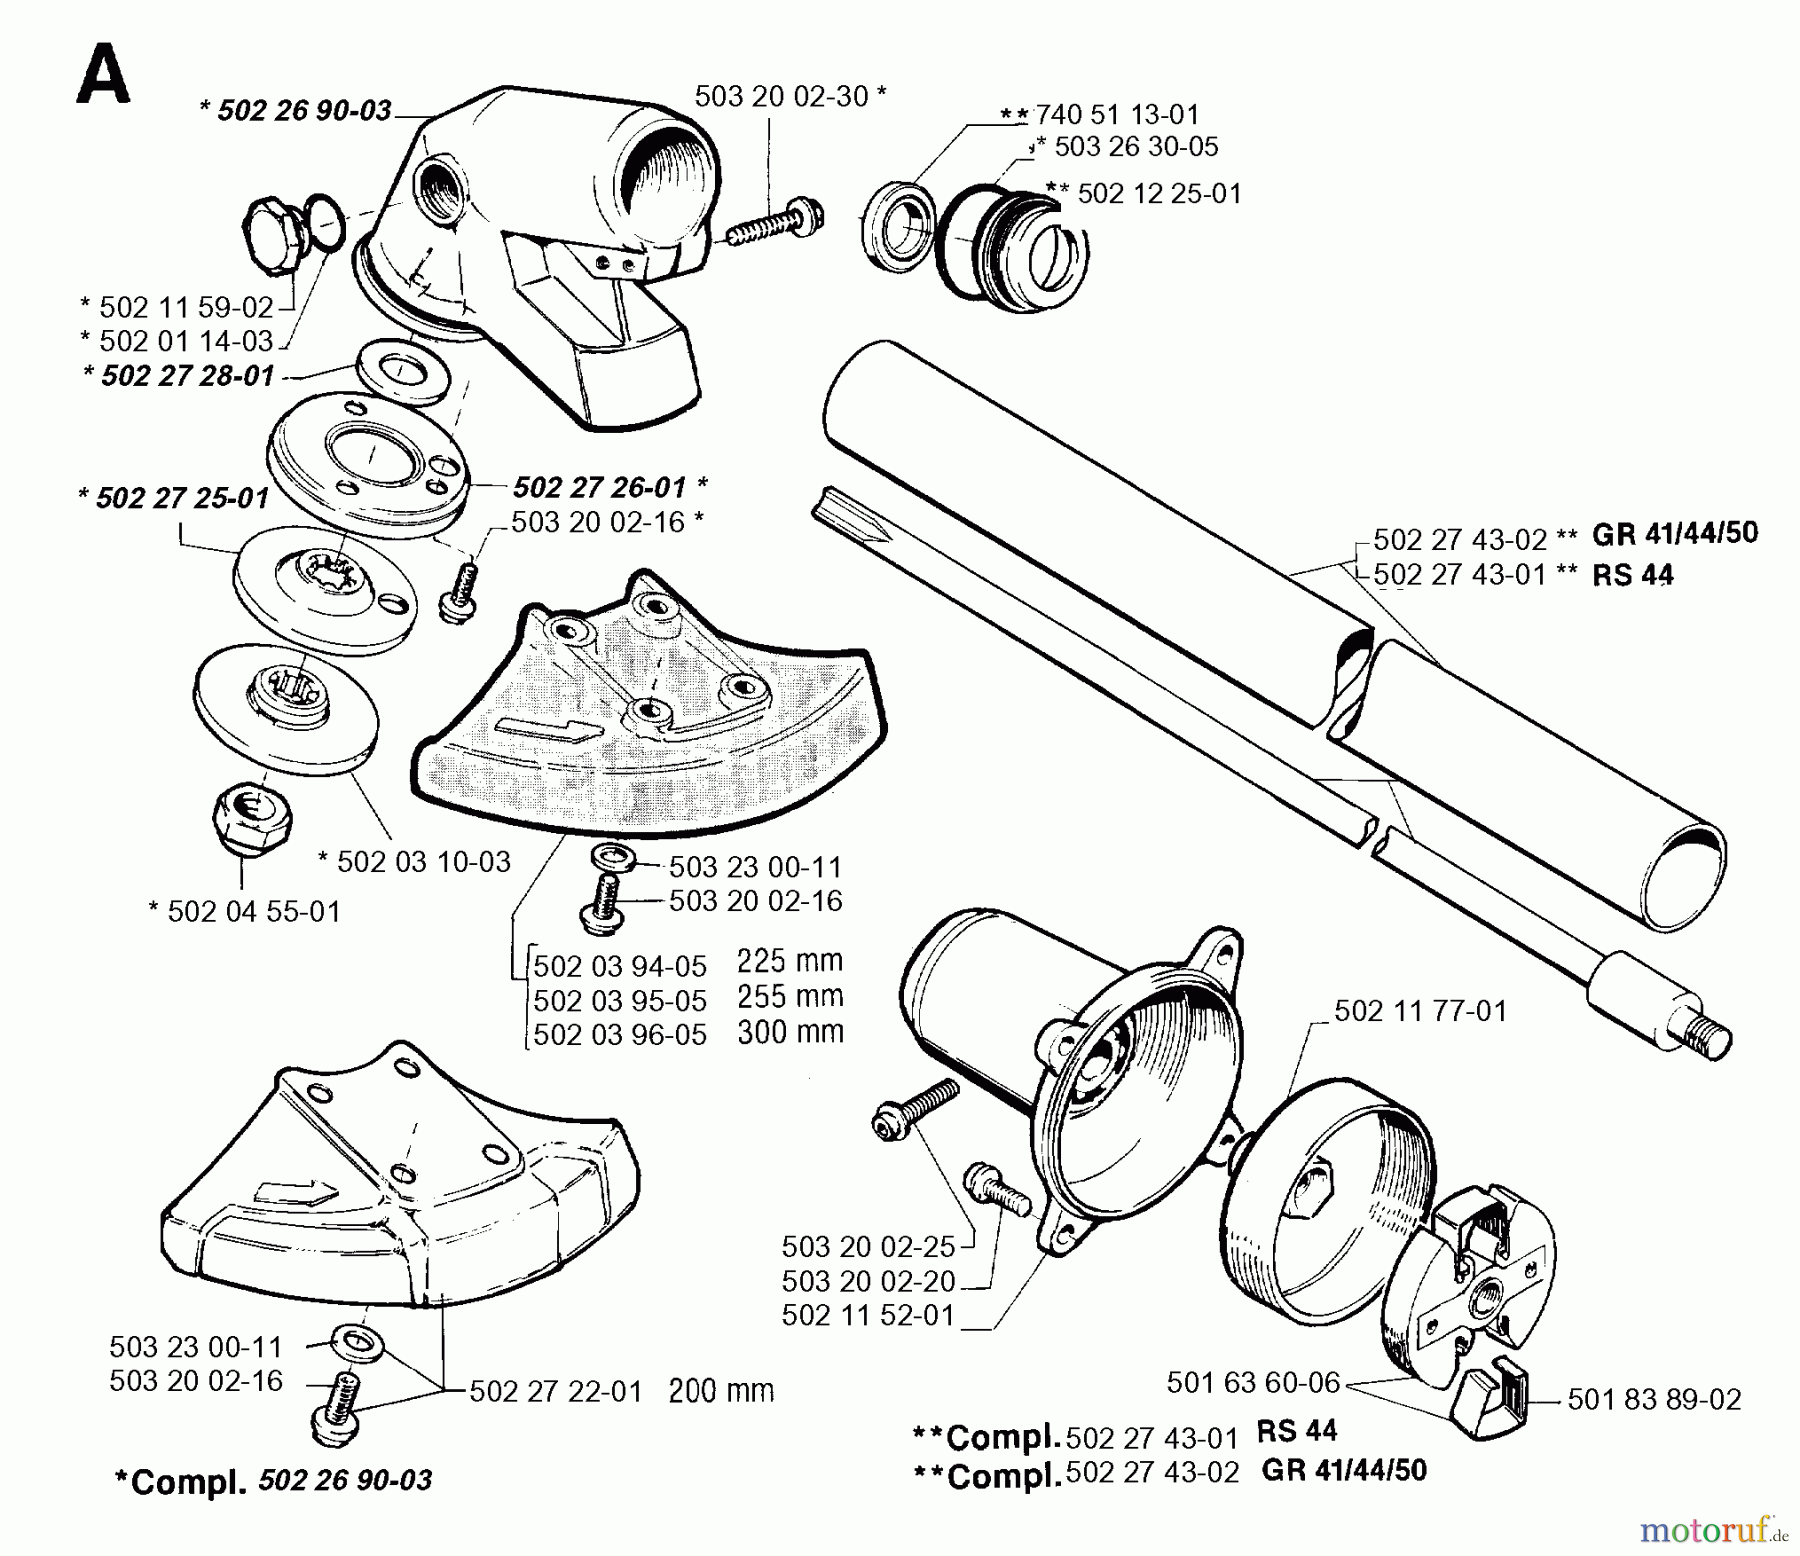  Jonsered Motorsensen, Trimmer GR50 - Jonsered String/Brush Trimmer (1994-03) BEVEL GEAR SHAFT